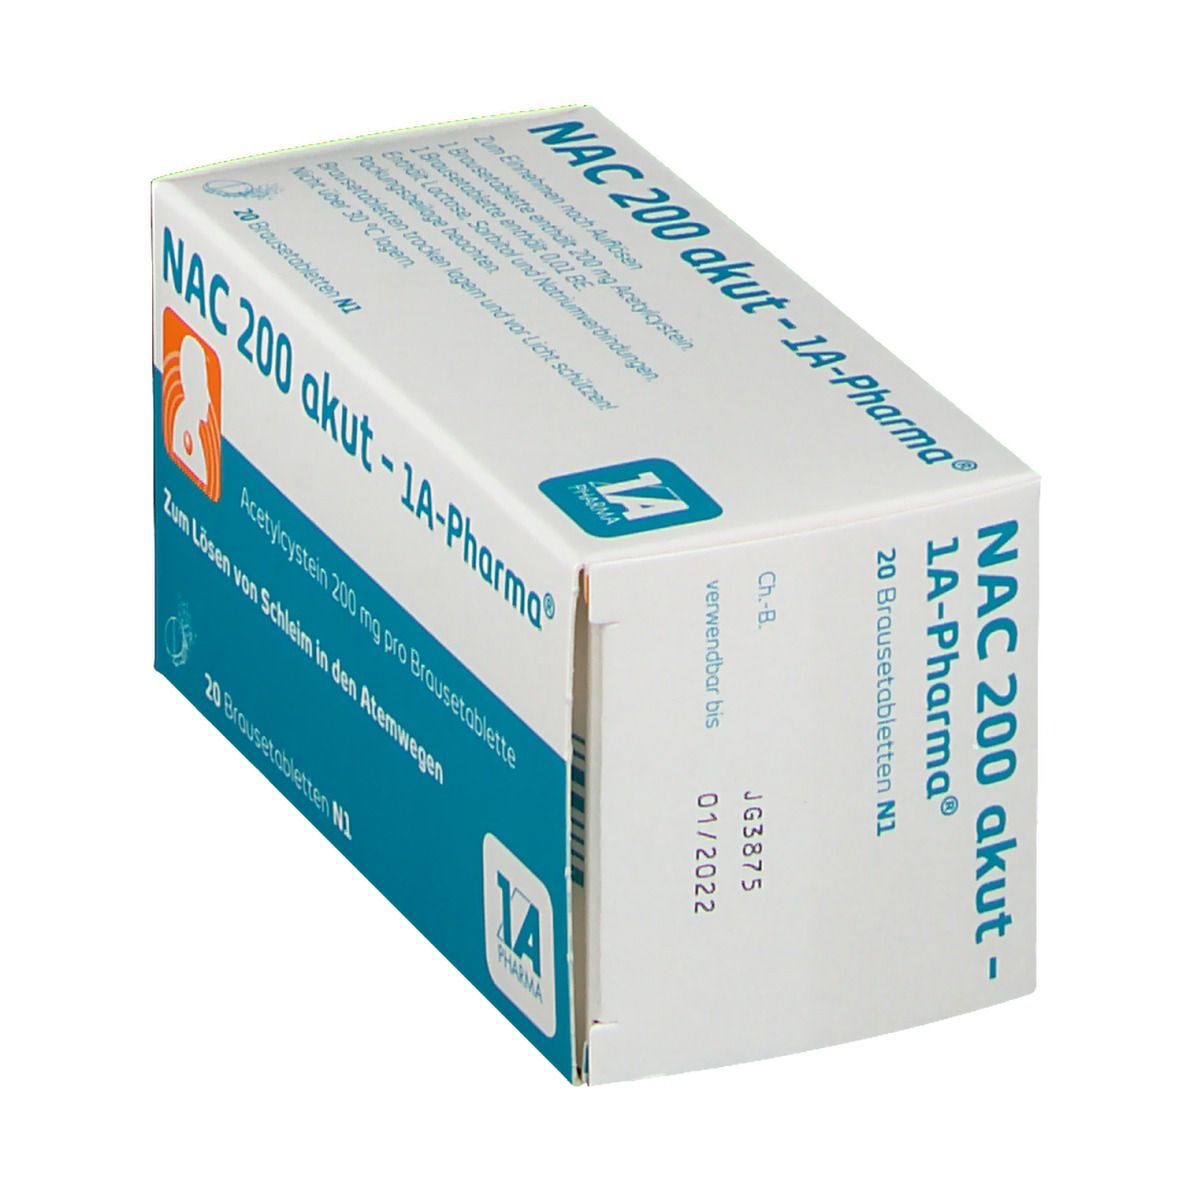 NAC 200 akut - 1A-Pharma®